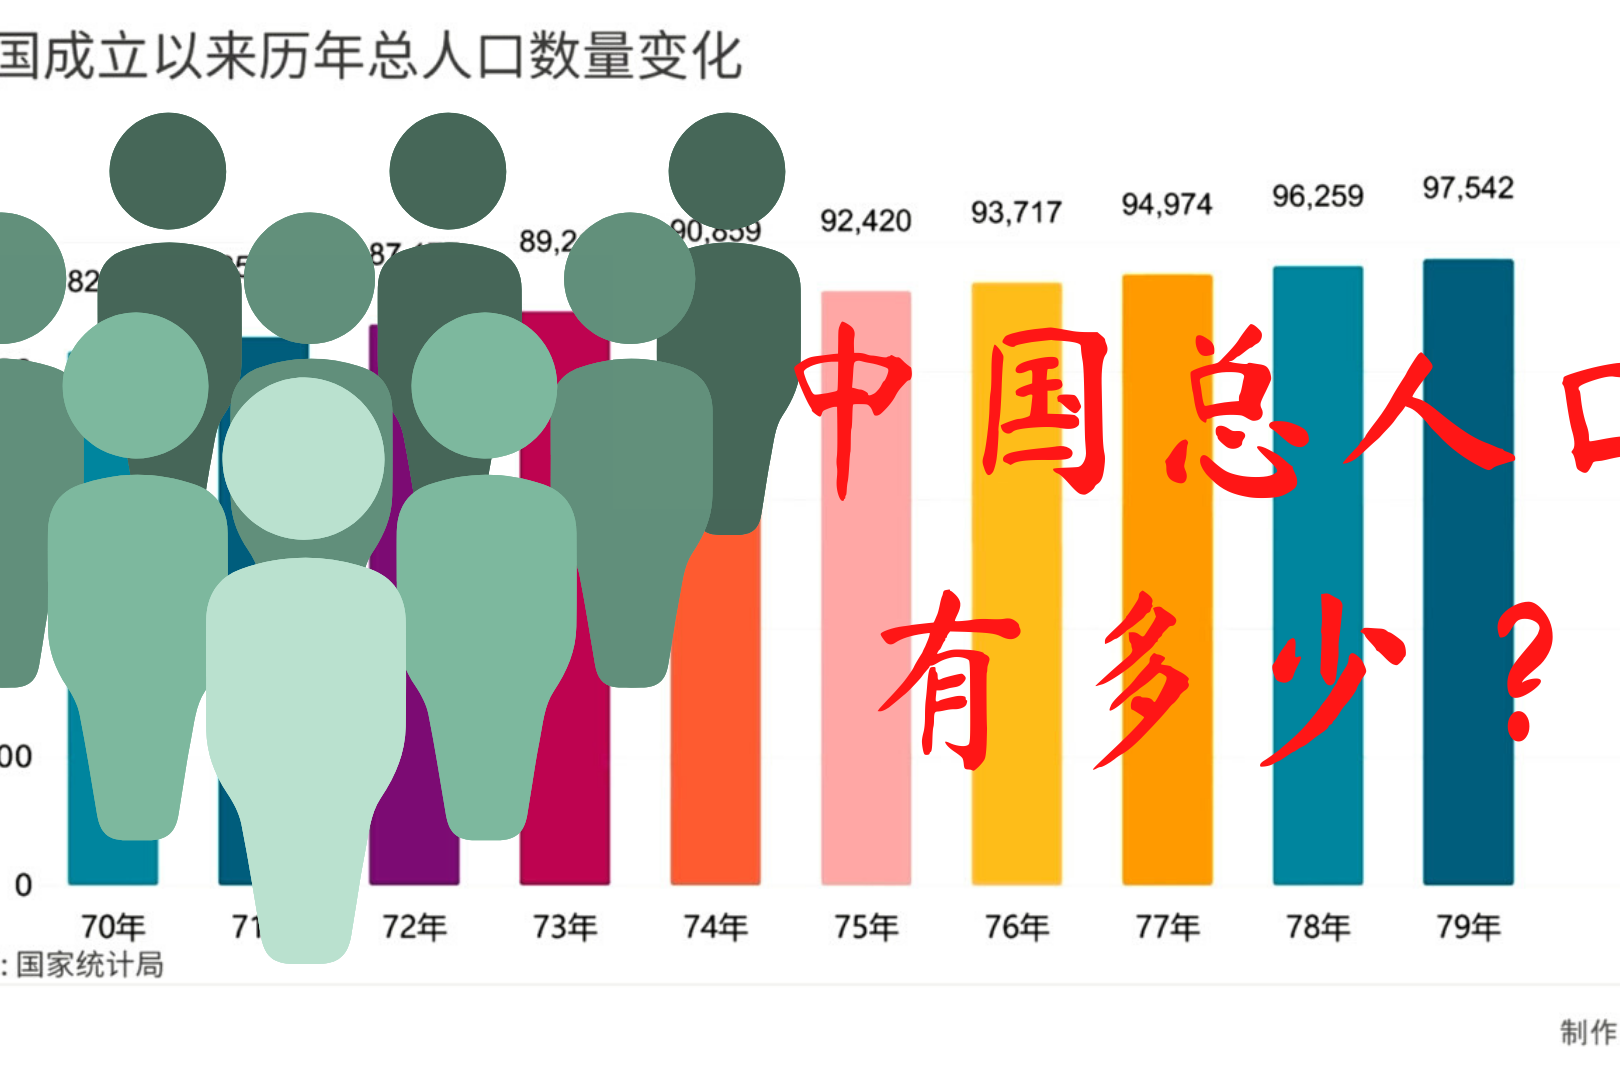 中国到底有多少人带你看历年人口数量